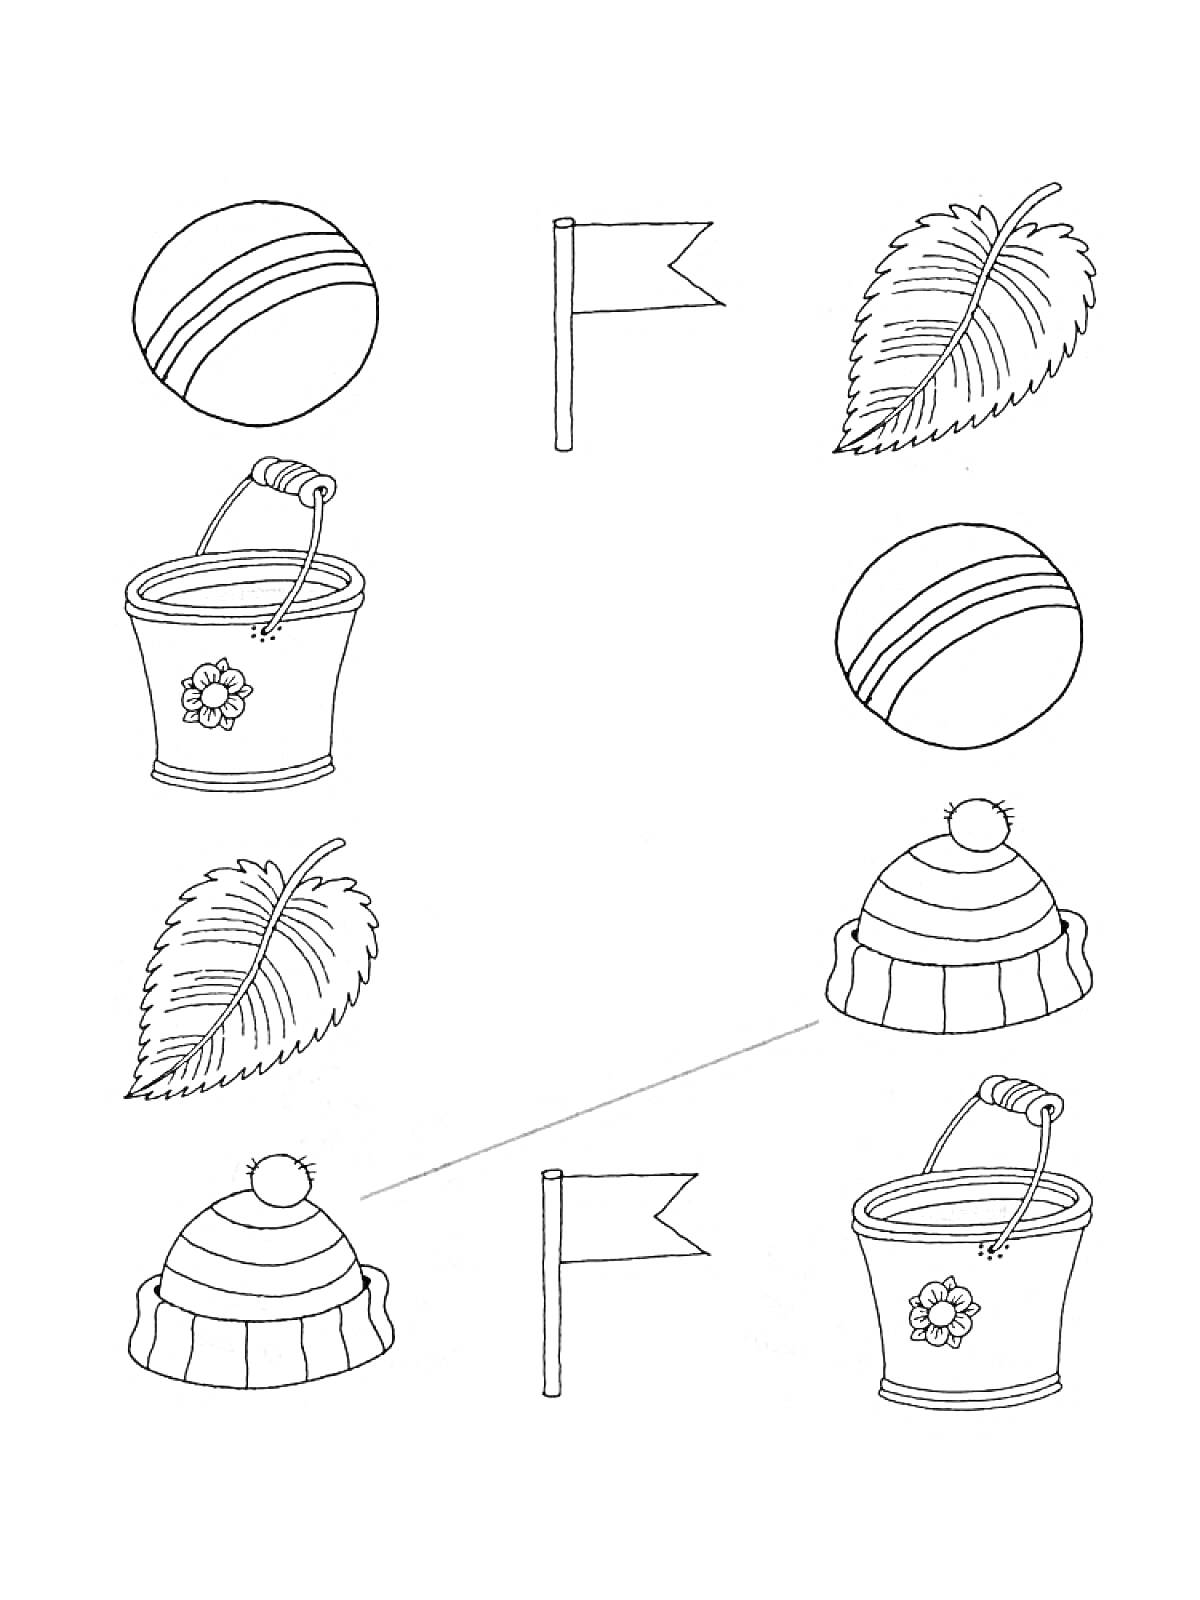 Математическая последовательность с мячом, флагом, листом, ведром и шапкой